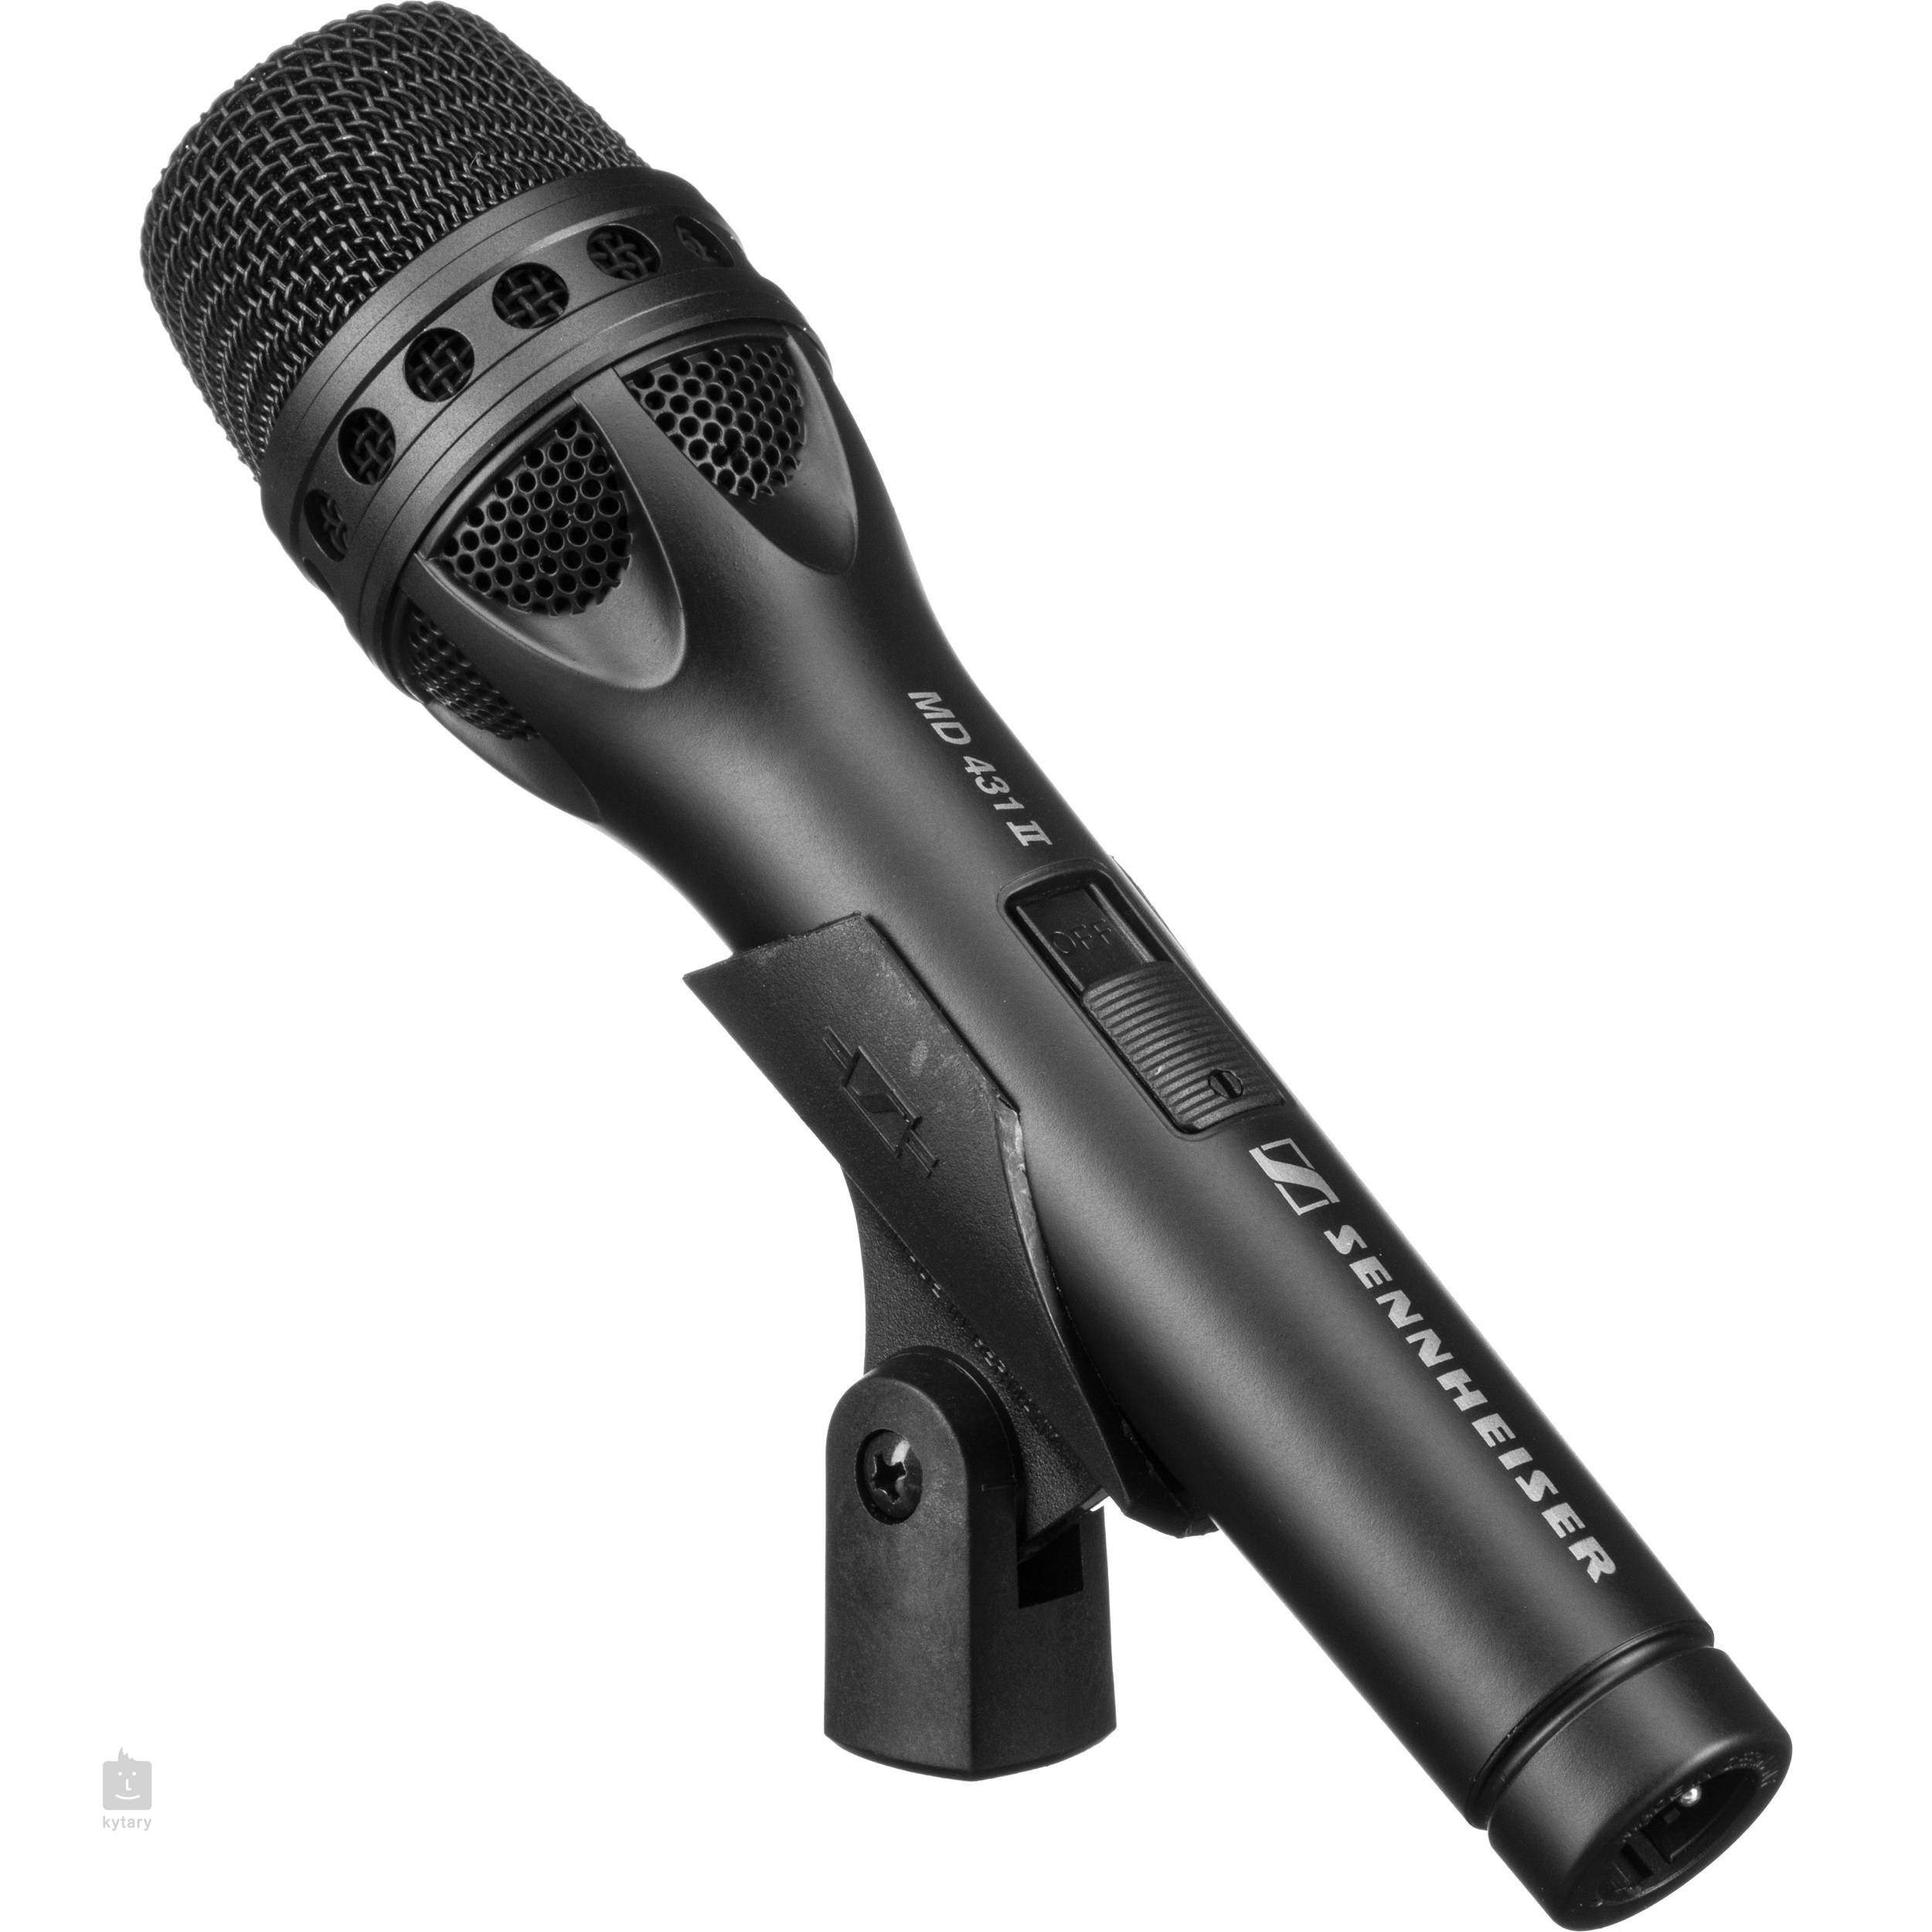 Sennheiser microphones